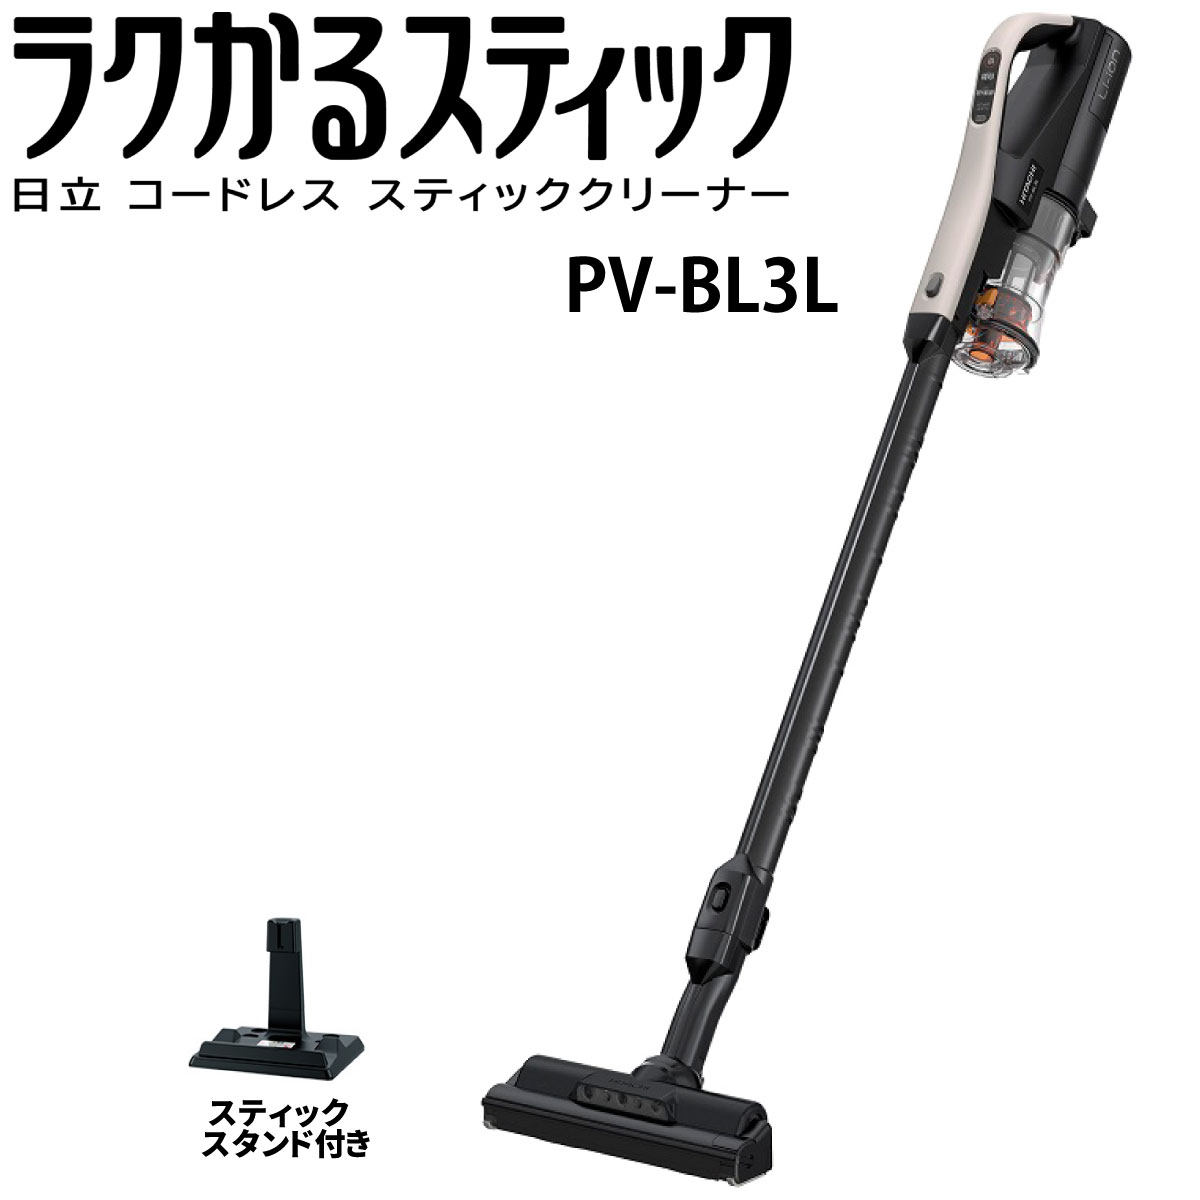 日立 PV-BL3L-C スティック掃除機 ラクかるスティック スタンド付き　コードレススティッククリーナー PV-BL3C pvbl3lc 新品